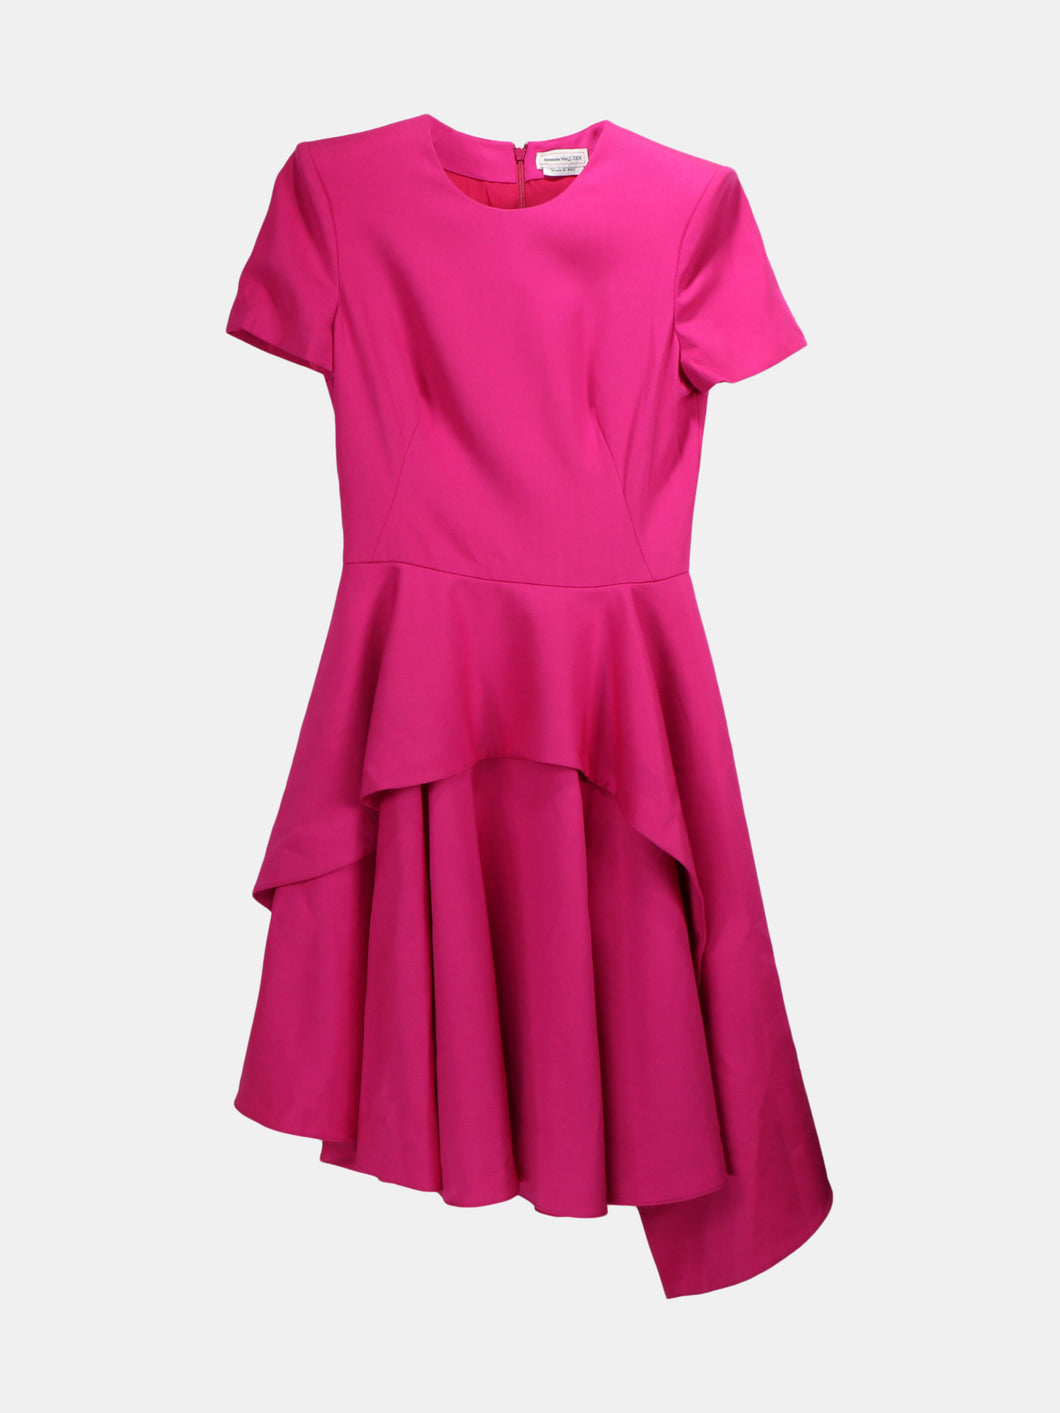 Alexander Mcqueen Women's Pink Cotton Ruffle Dress